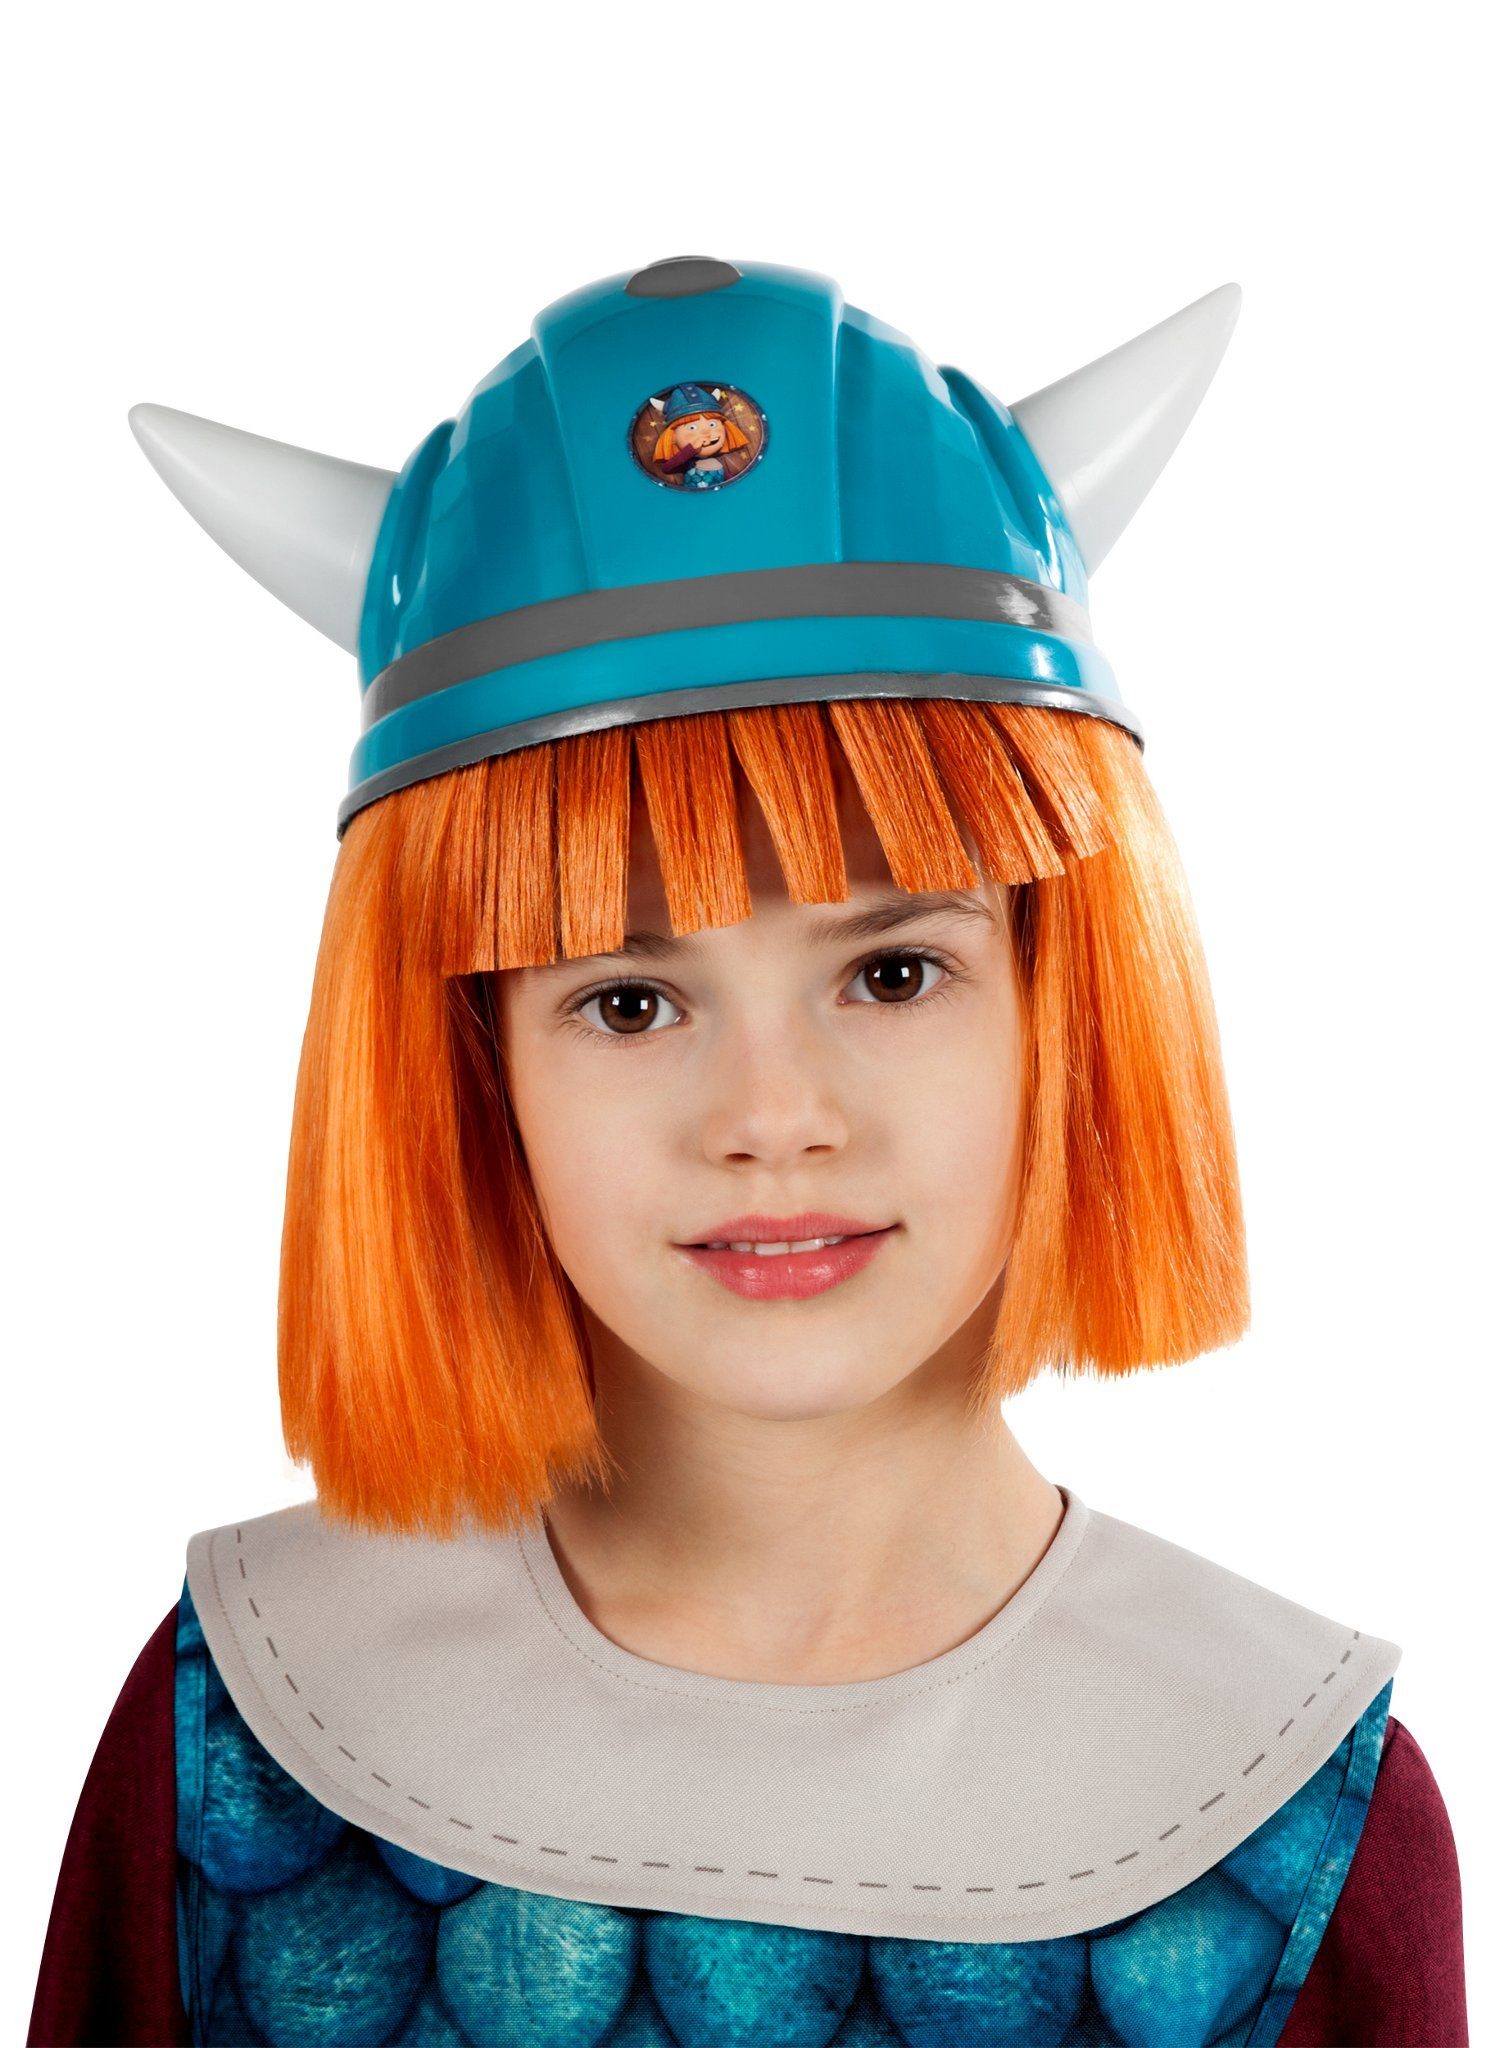 Maskworld Kostüm »Wickie Helm für Kinder«, Der passende Helm für den  kleinen Wikinger - original lizenziert! online kaufen | OTTO